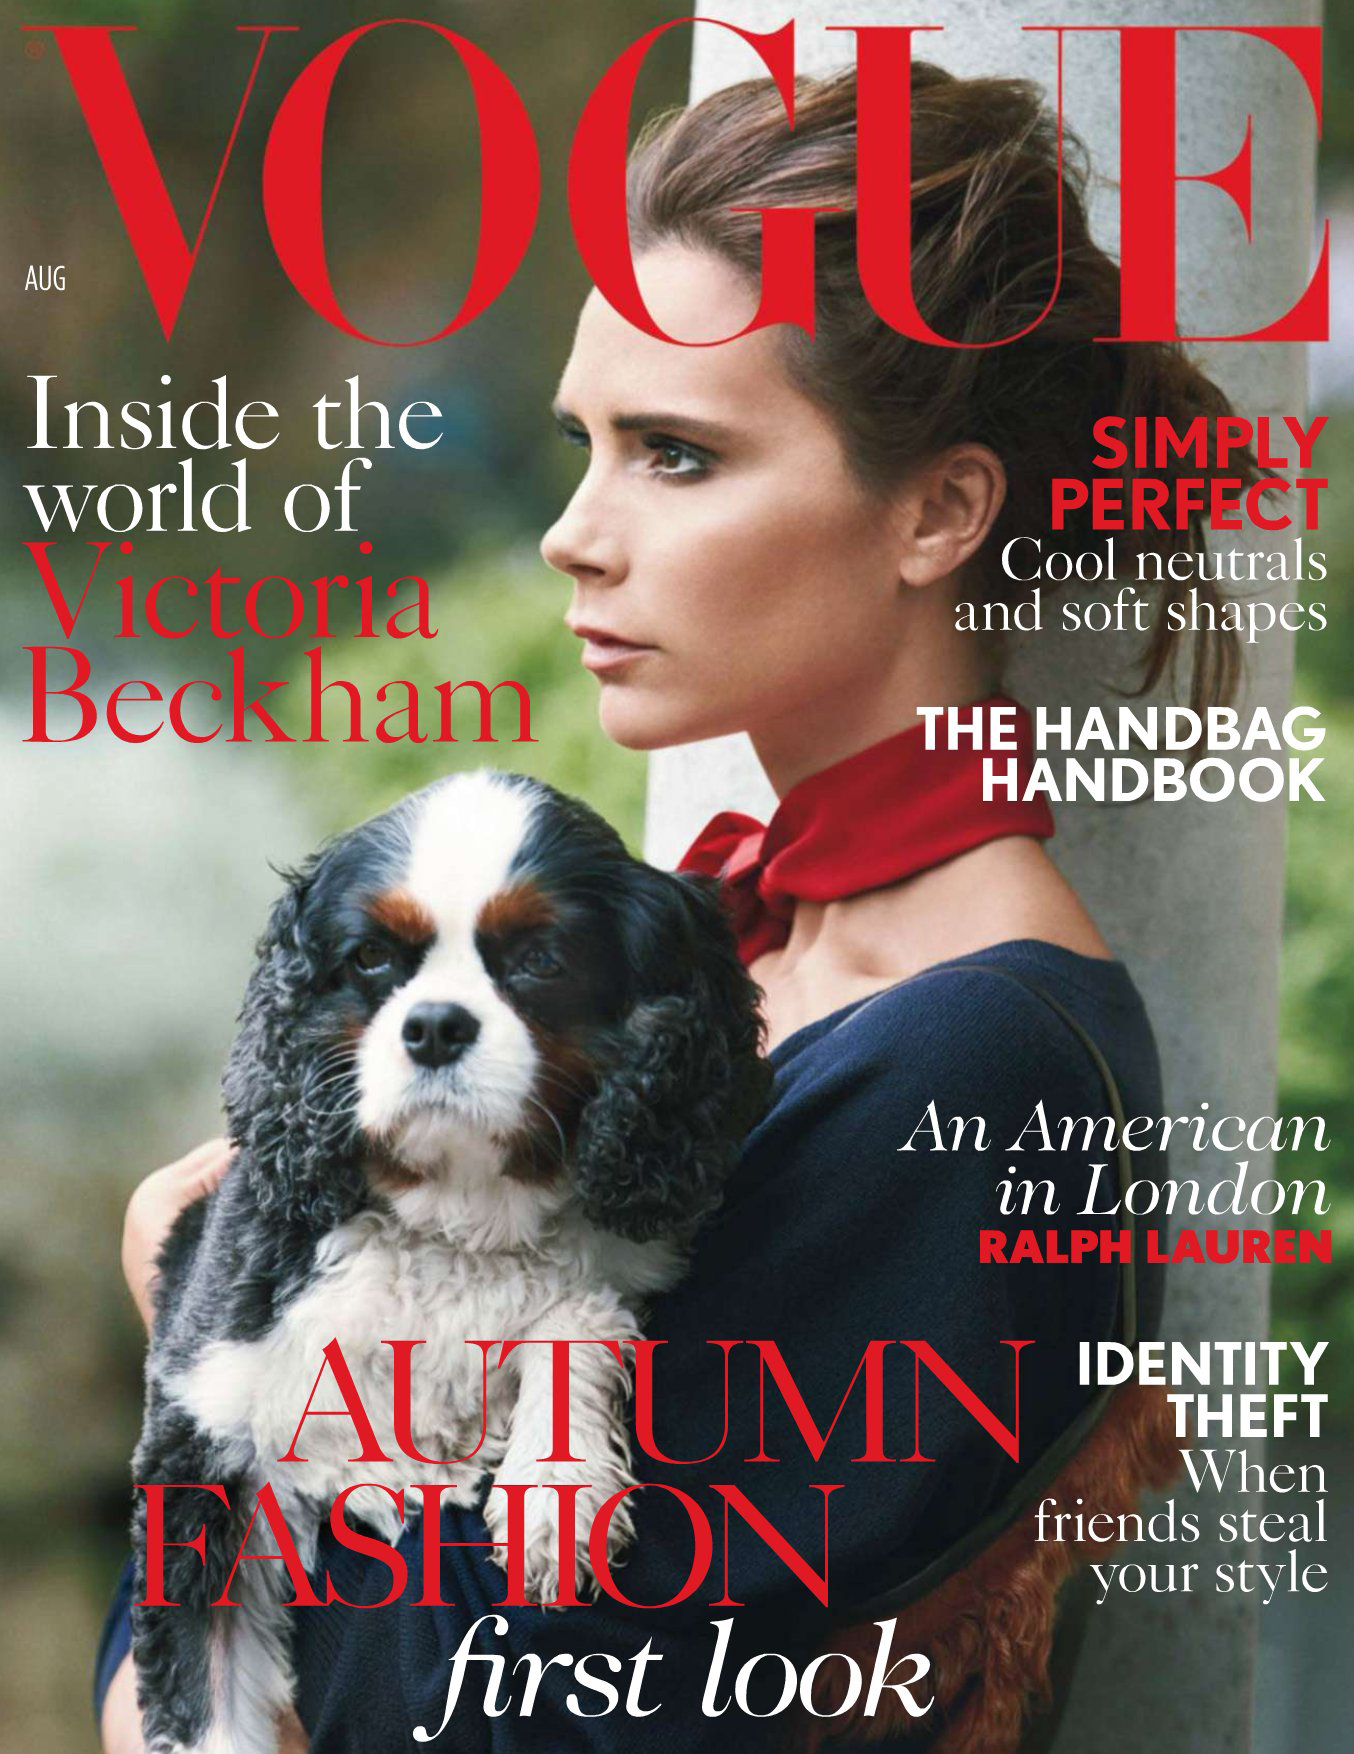 Victoria_Beckham_--_Vogue_2014_002.jpg